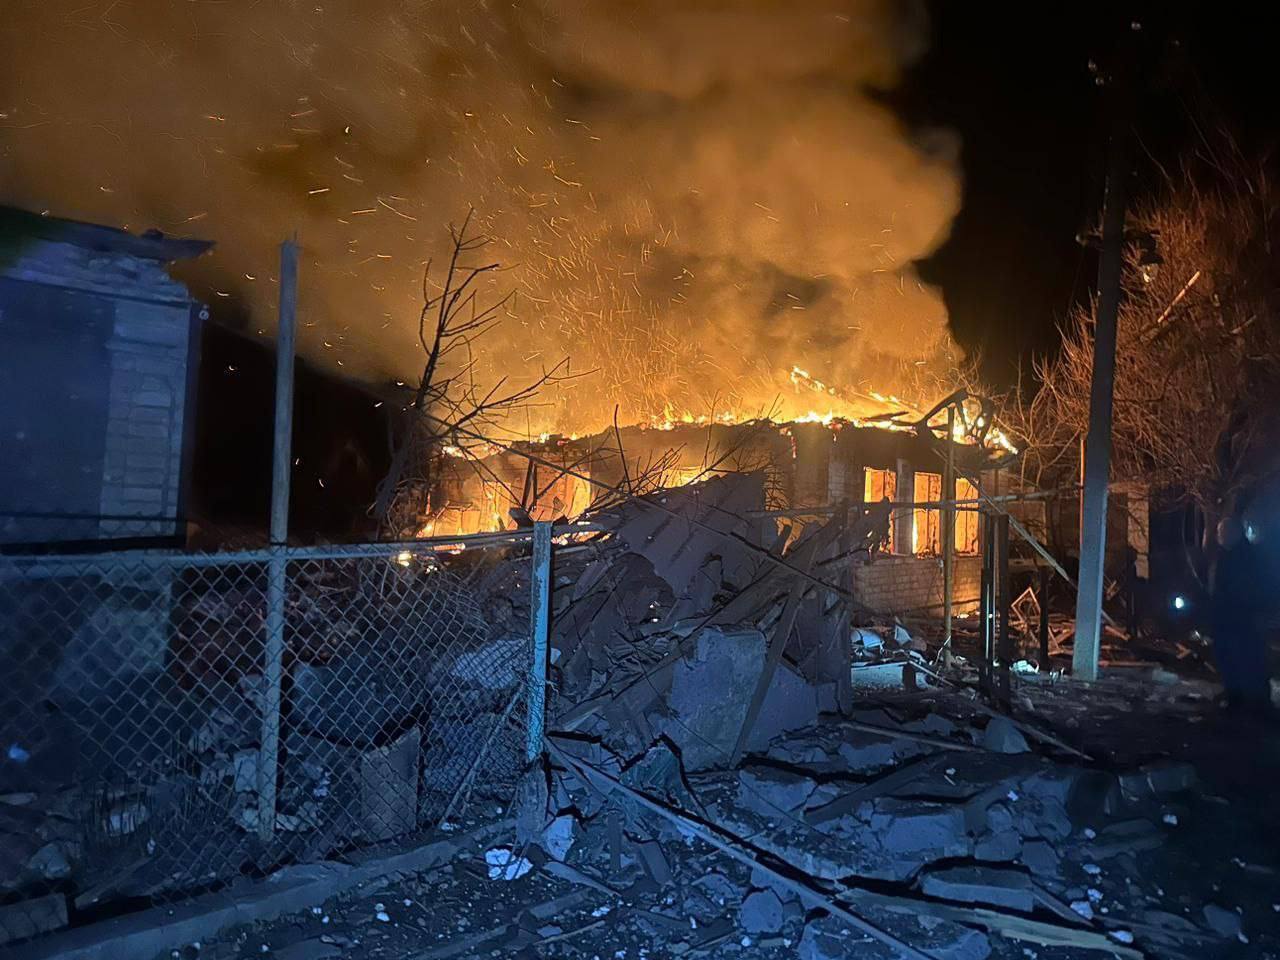 Оккупанты ударили по Селидово на Донетчине: повреждены десятки домов, есть пострадавшие. Фото